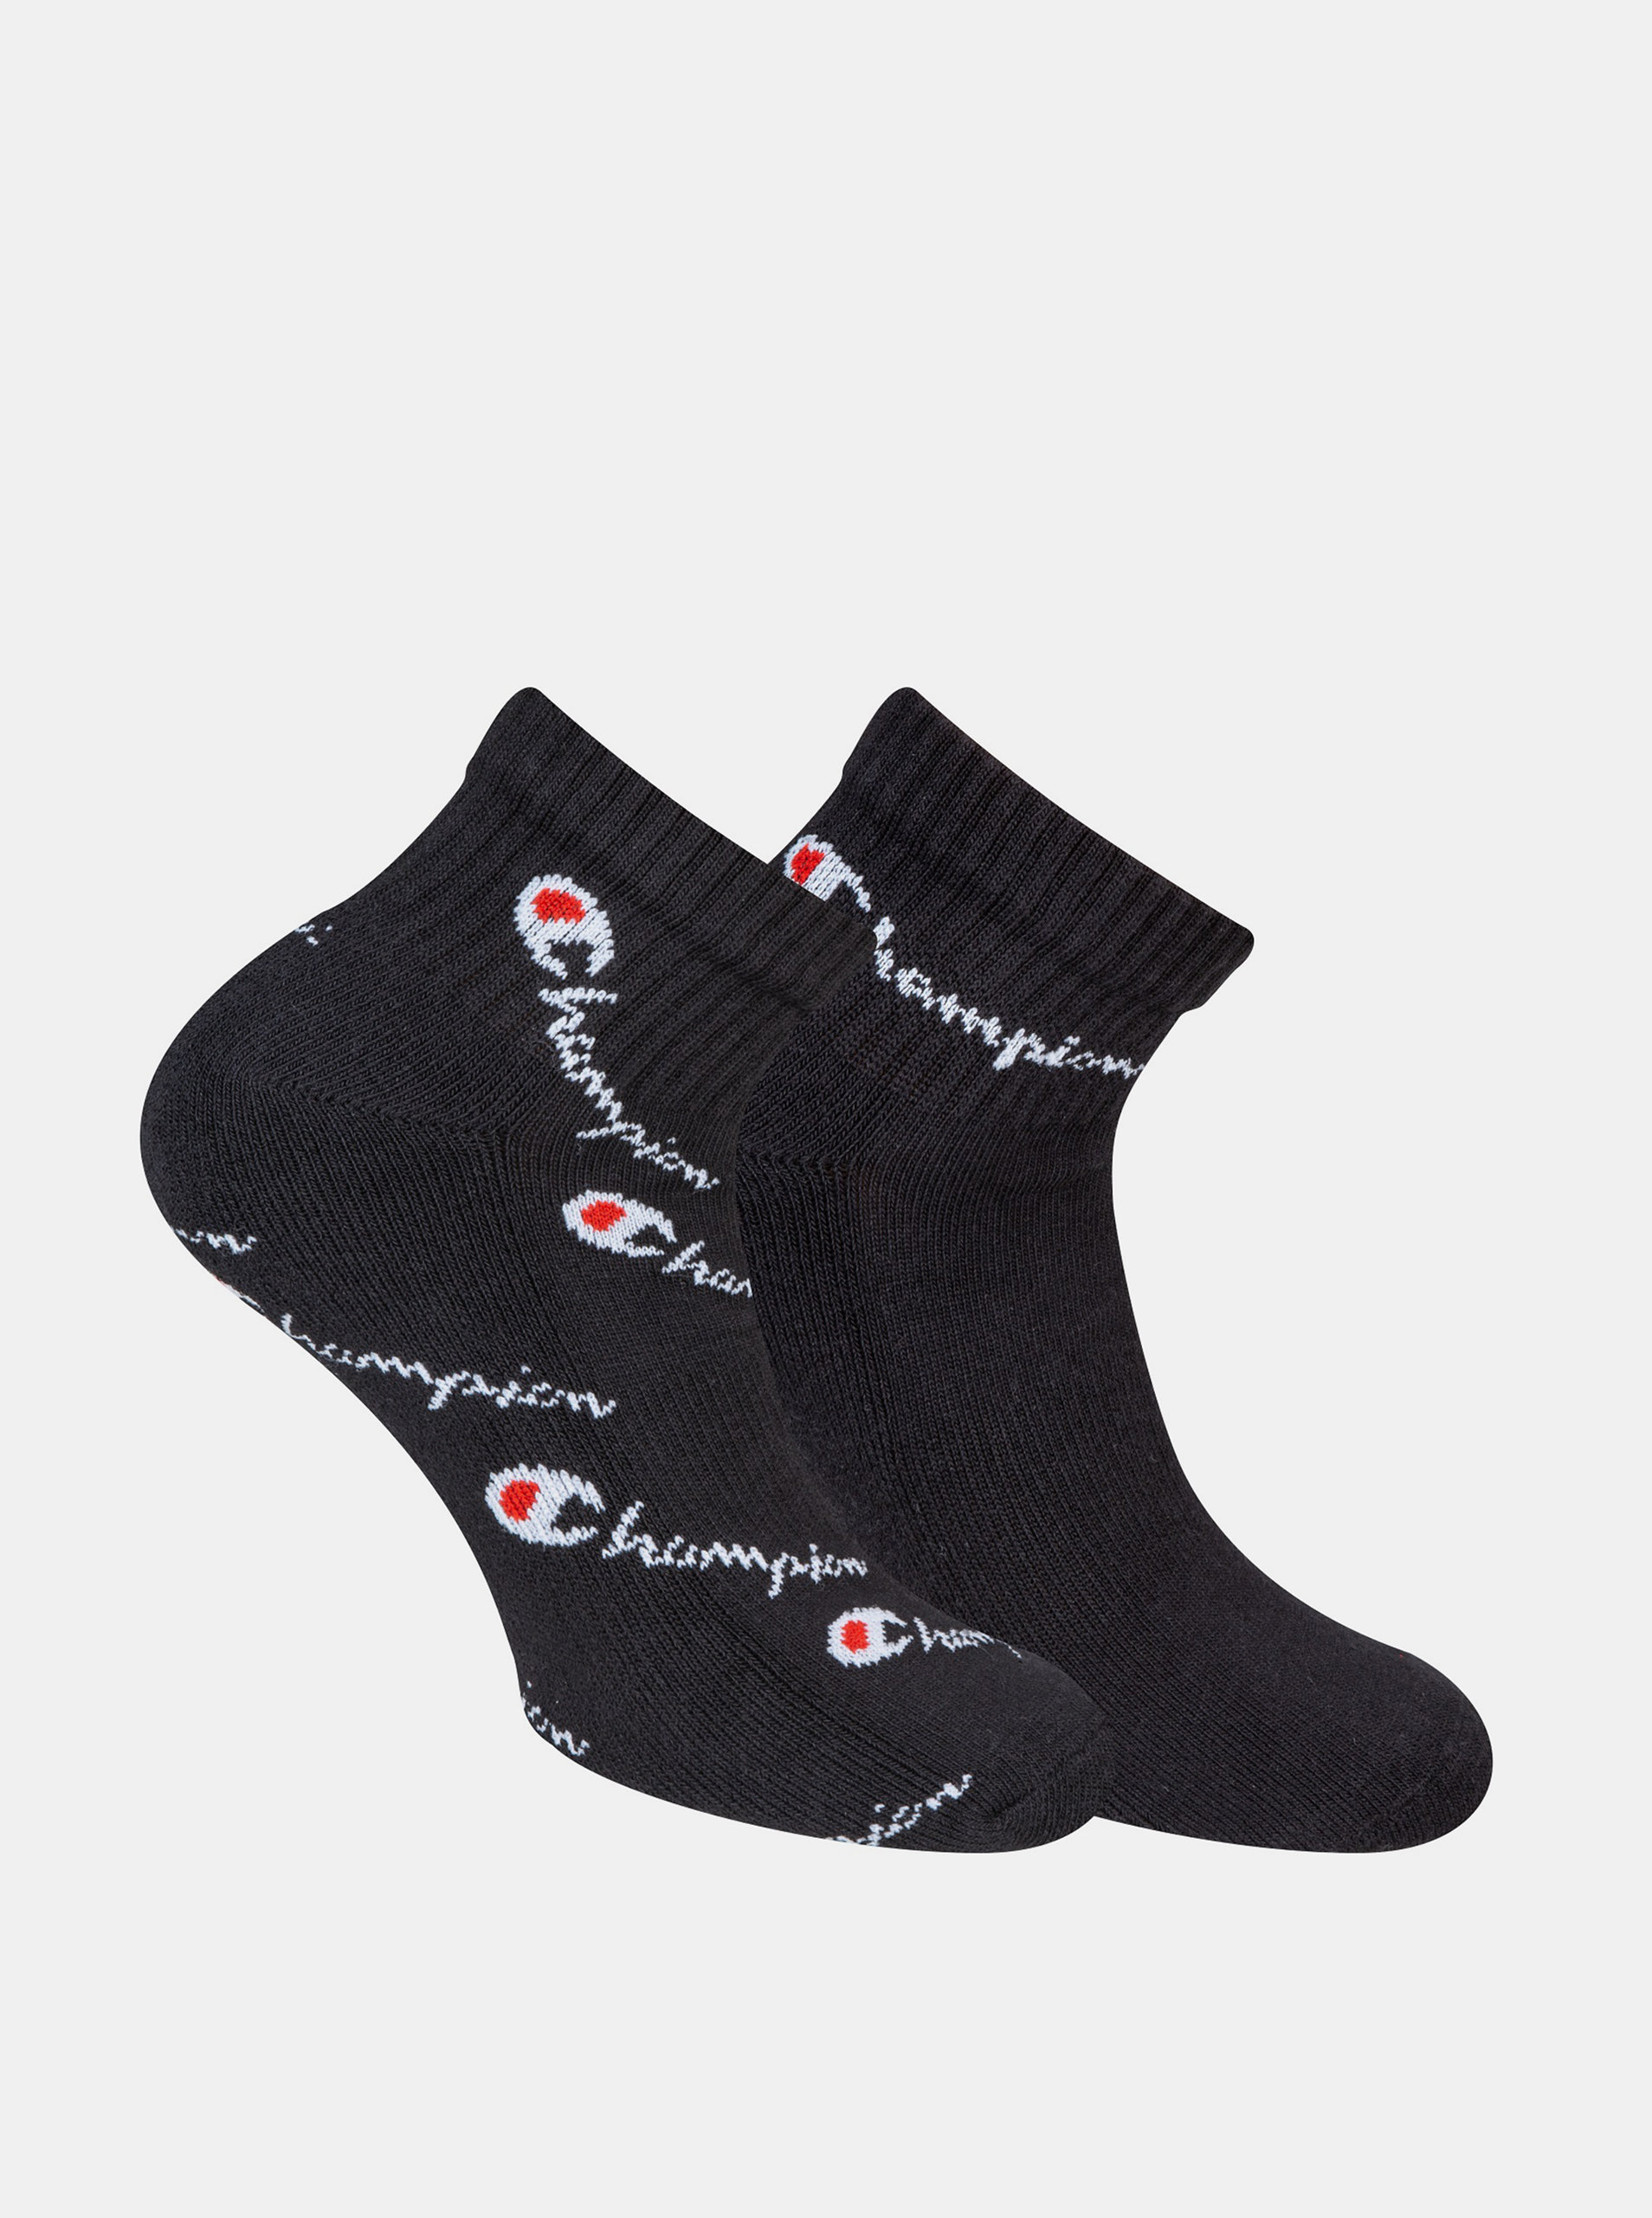 Fotografie CHAMPION ANKLE FASHION MIX 2x - Sportovní kotníkové ponožky 2 páry - černá